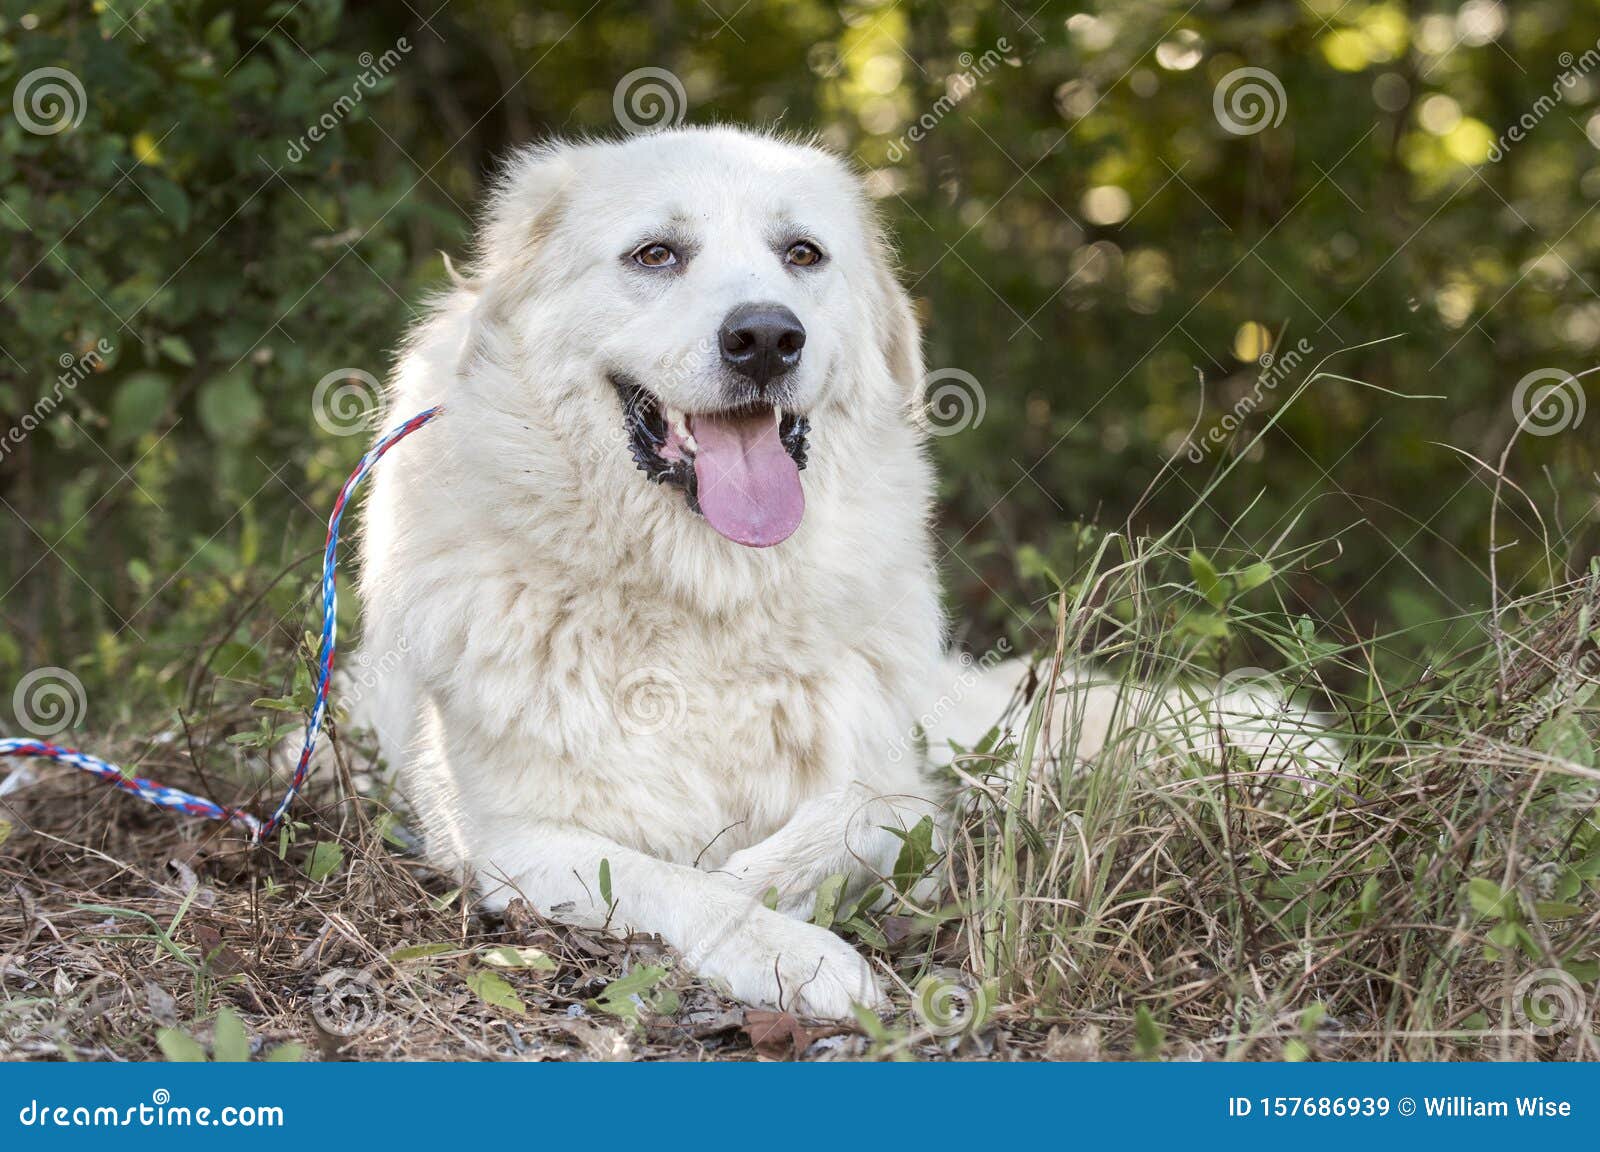 lazy large white great pyrenees dog